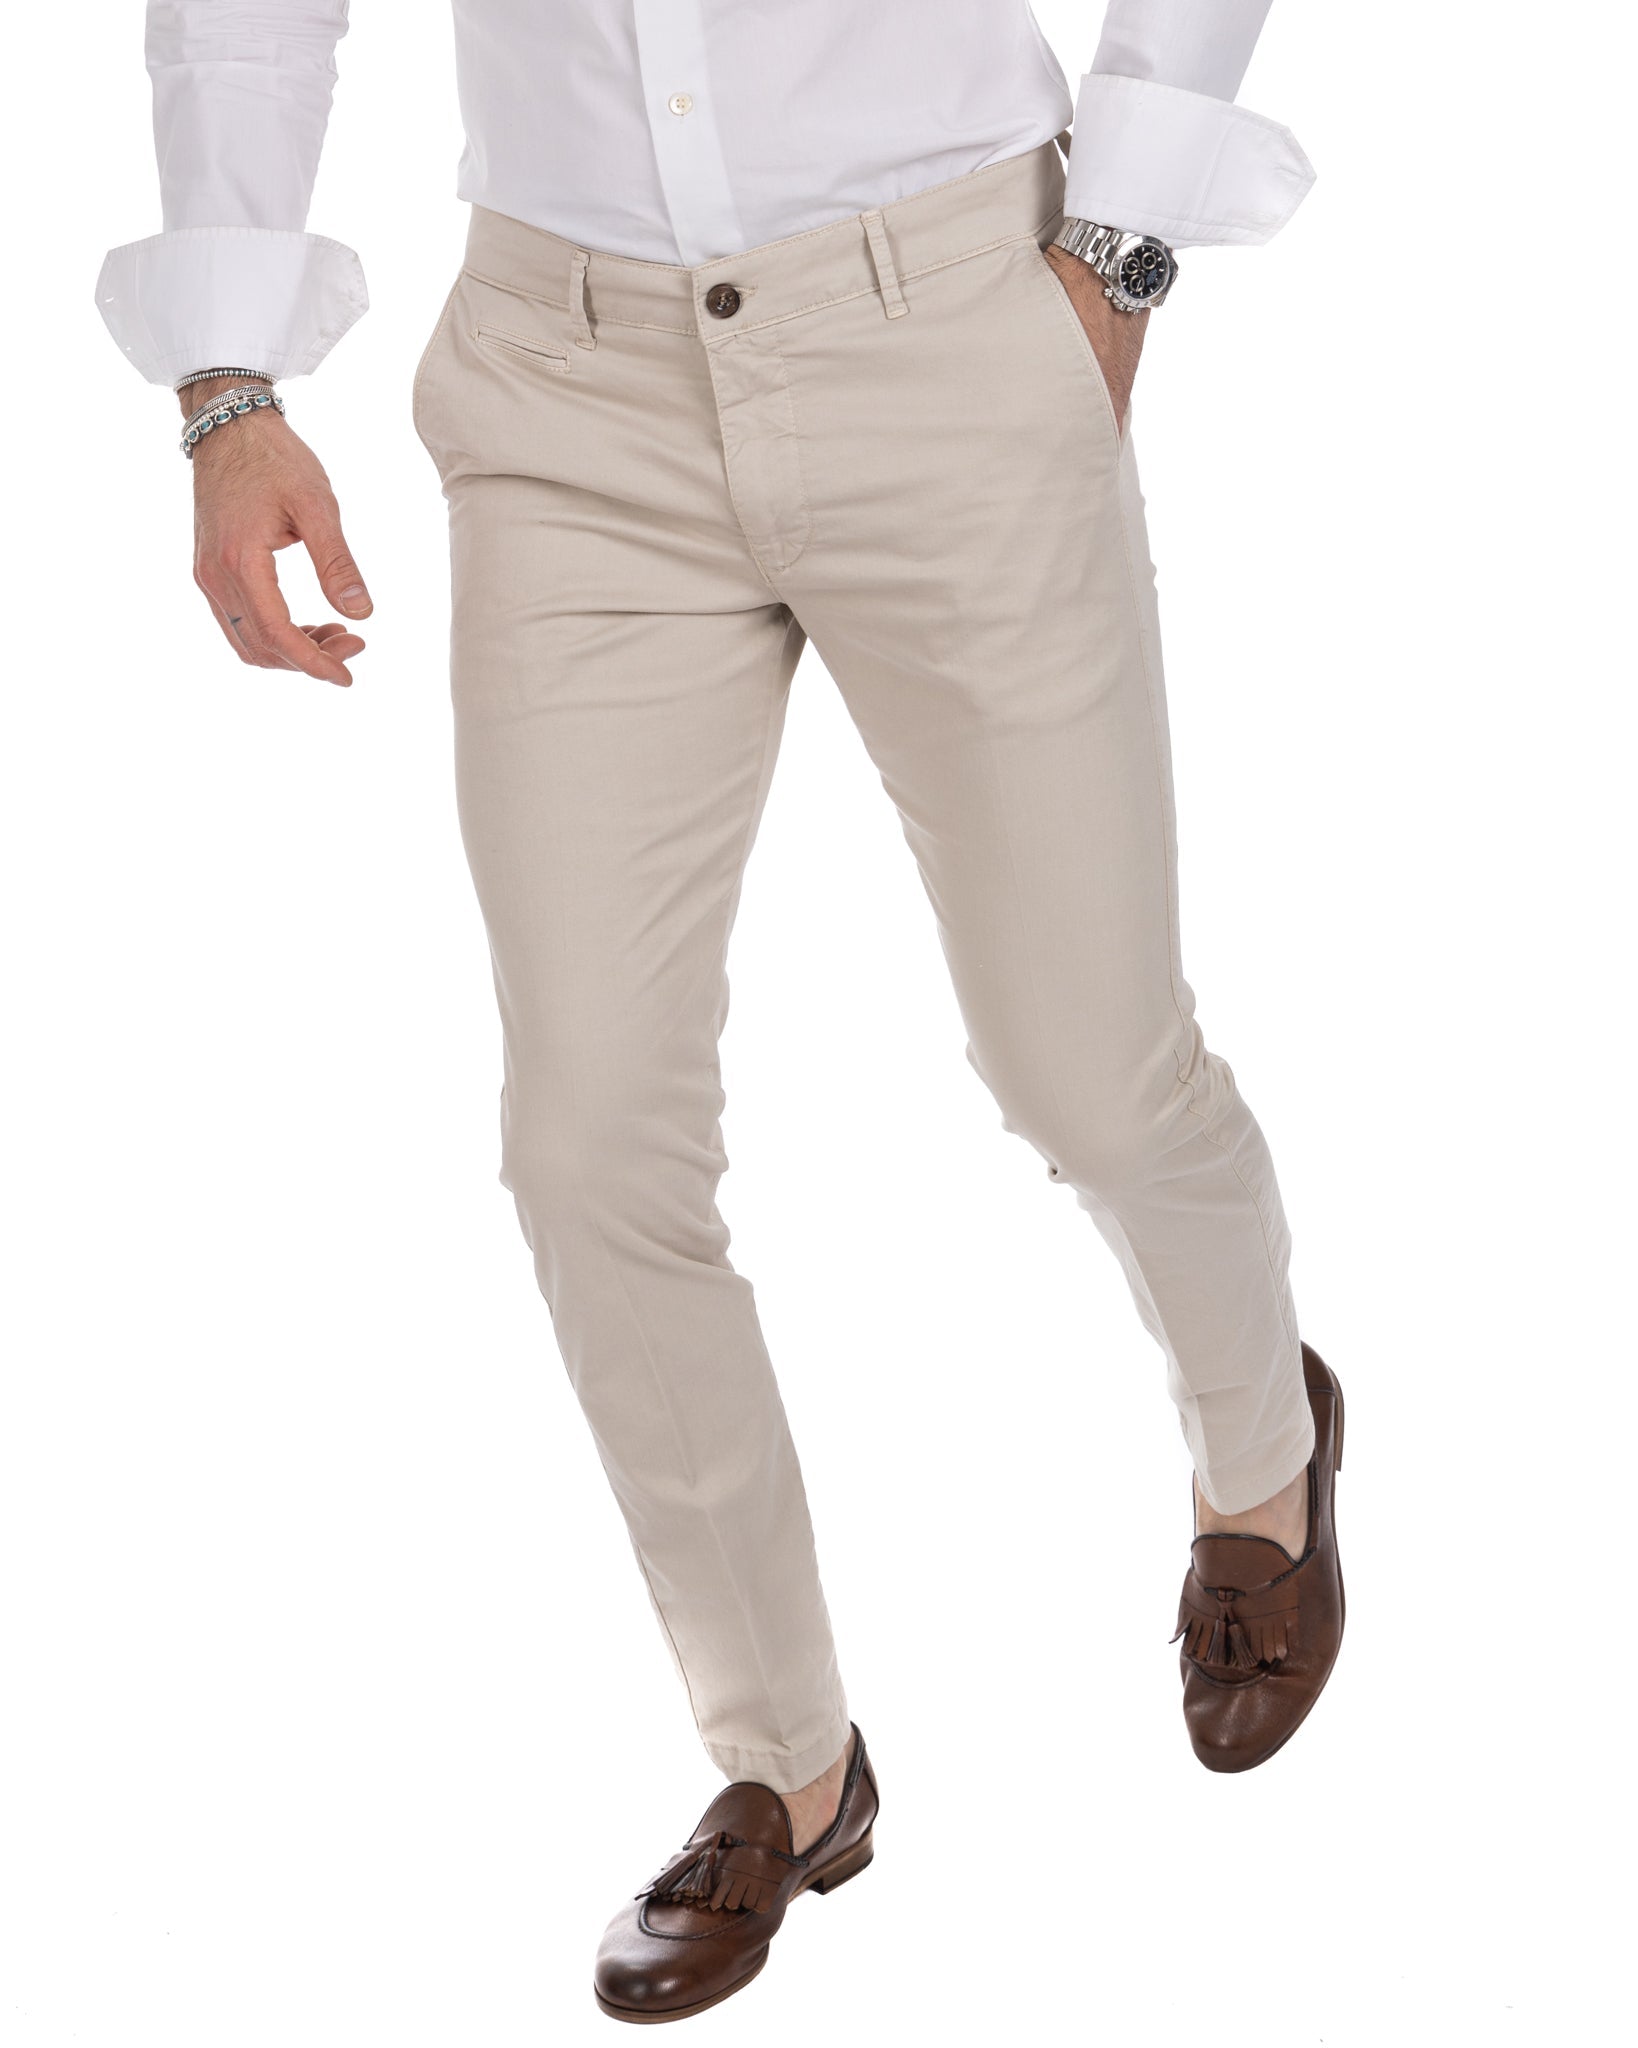 Frank - pantalon basique beige